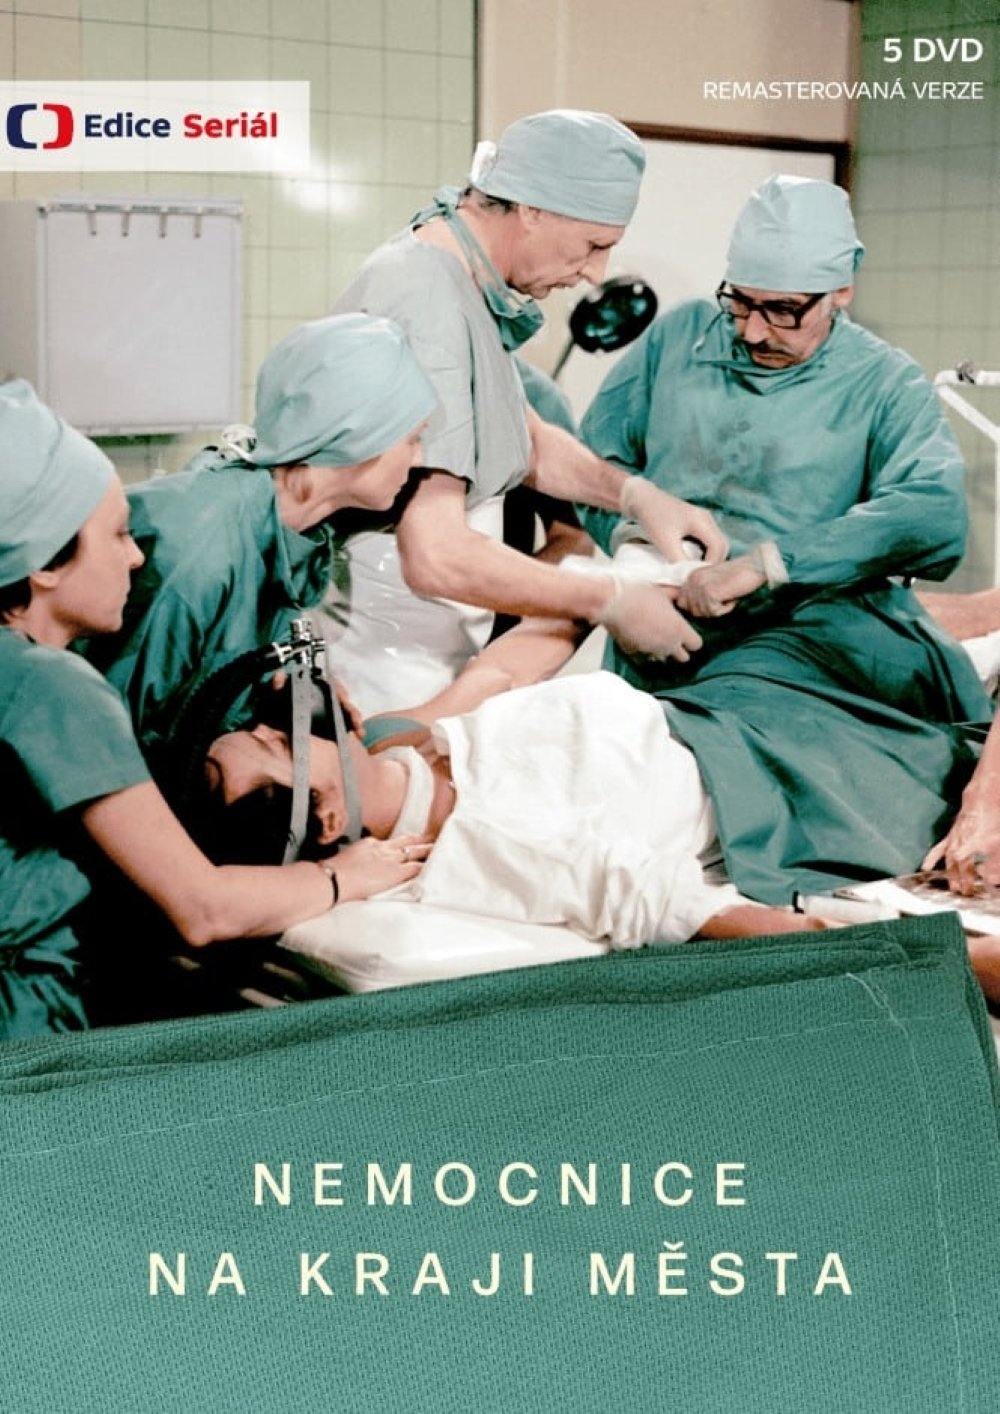 Plakát pro film “Nemocnice na kraji města”